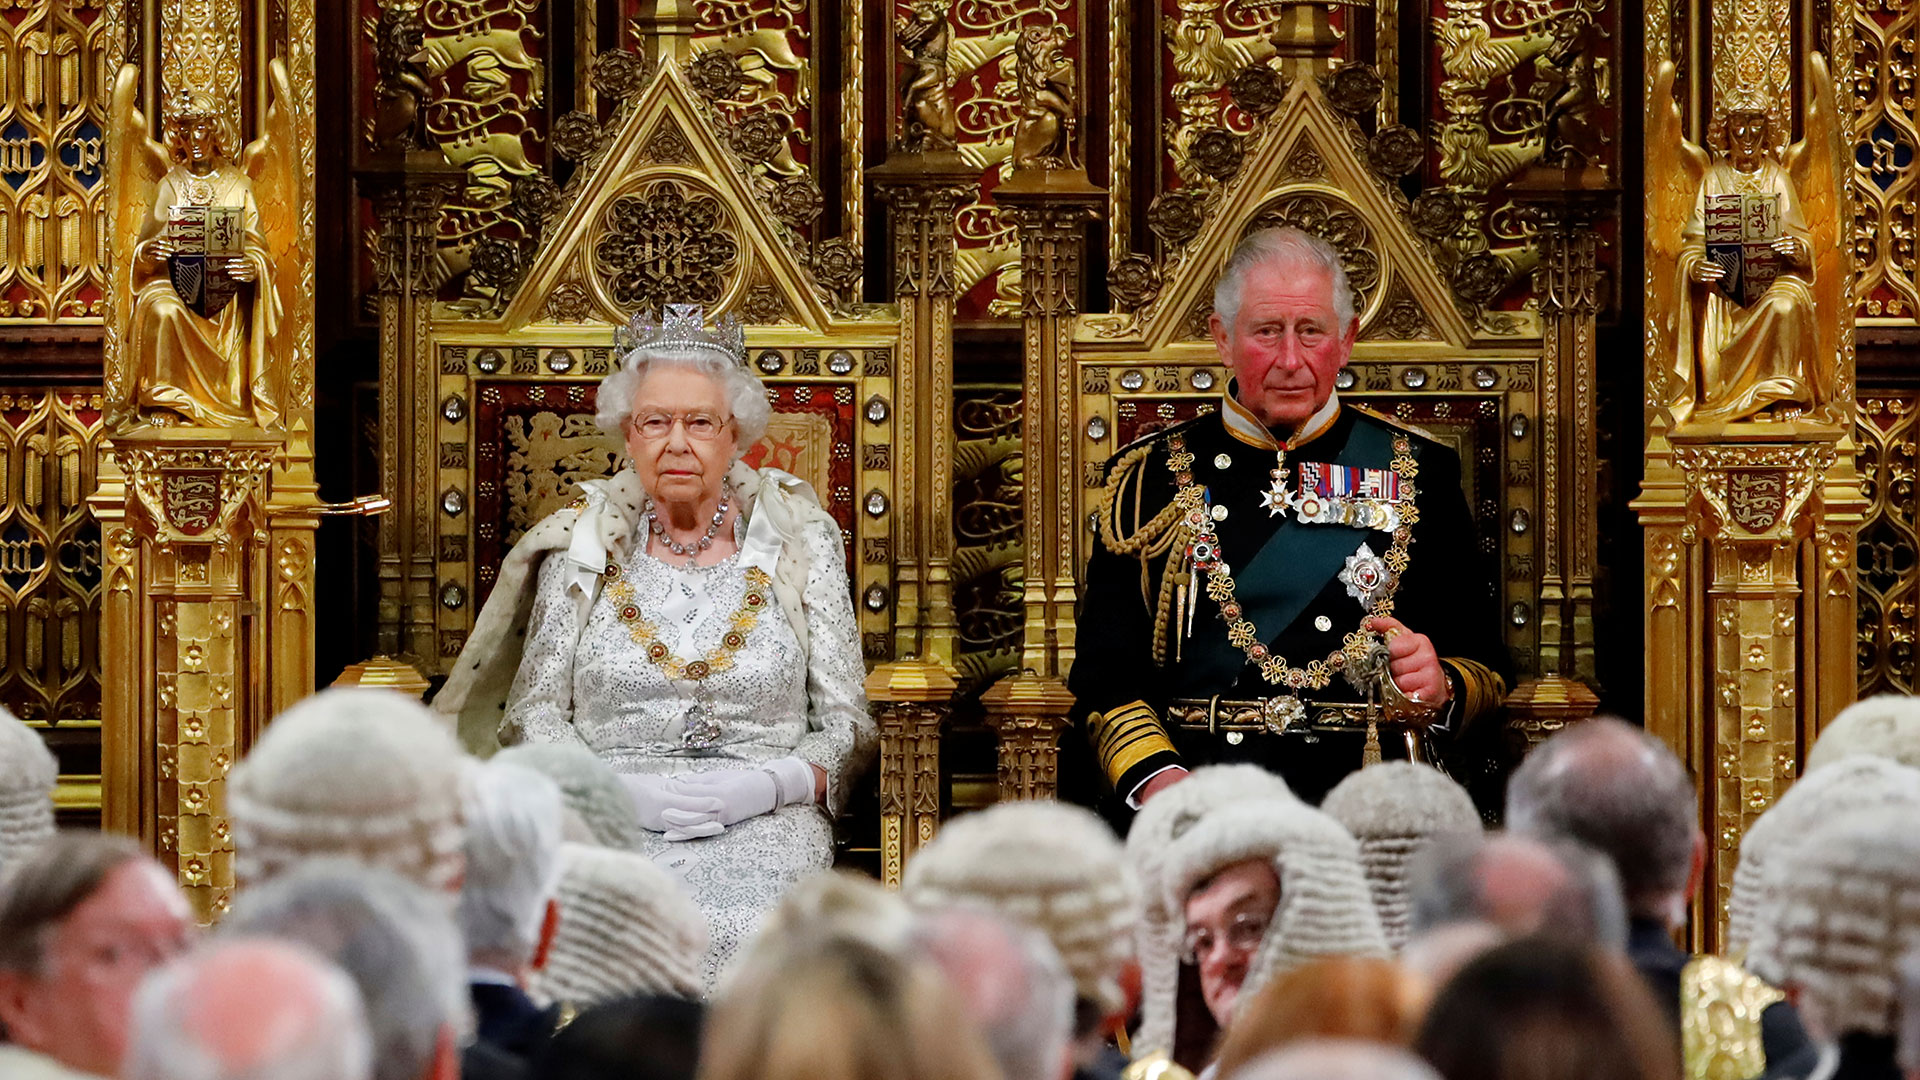 Isabel II siempre se mantuvo firme que que nunca habría una regencia a menos que estuviera enferma al punto de verse incapaz de realizar sus tareas (Reuters)